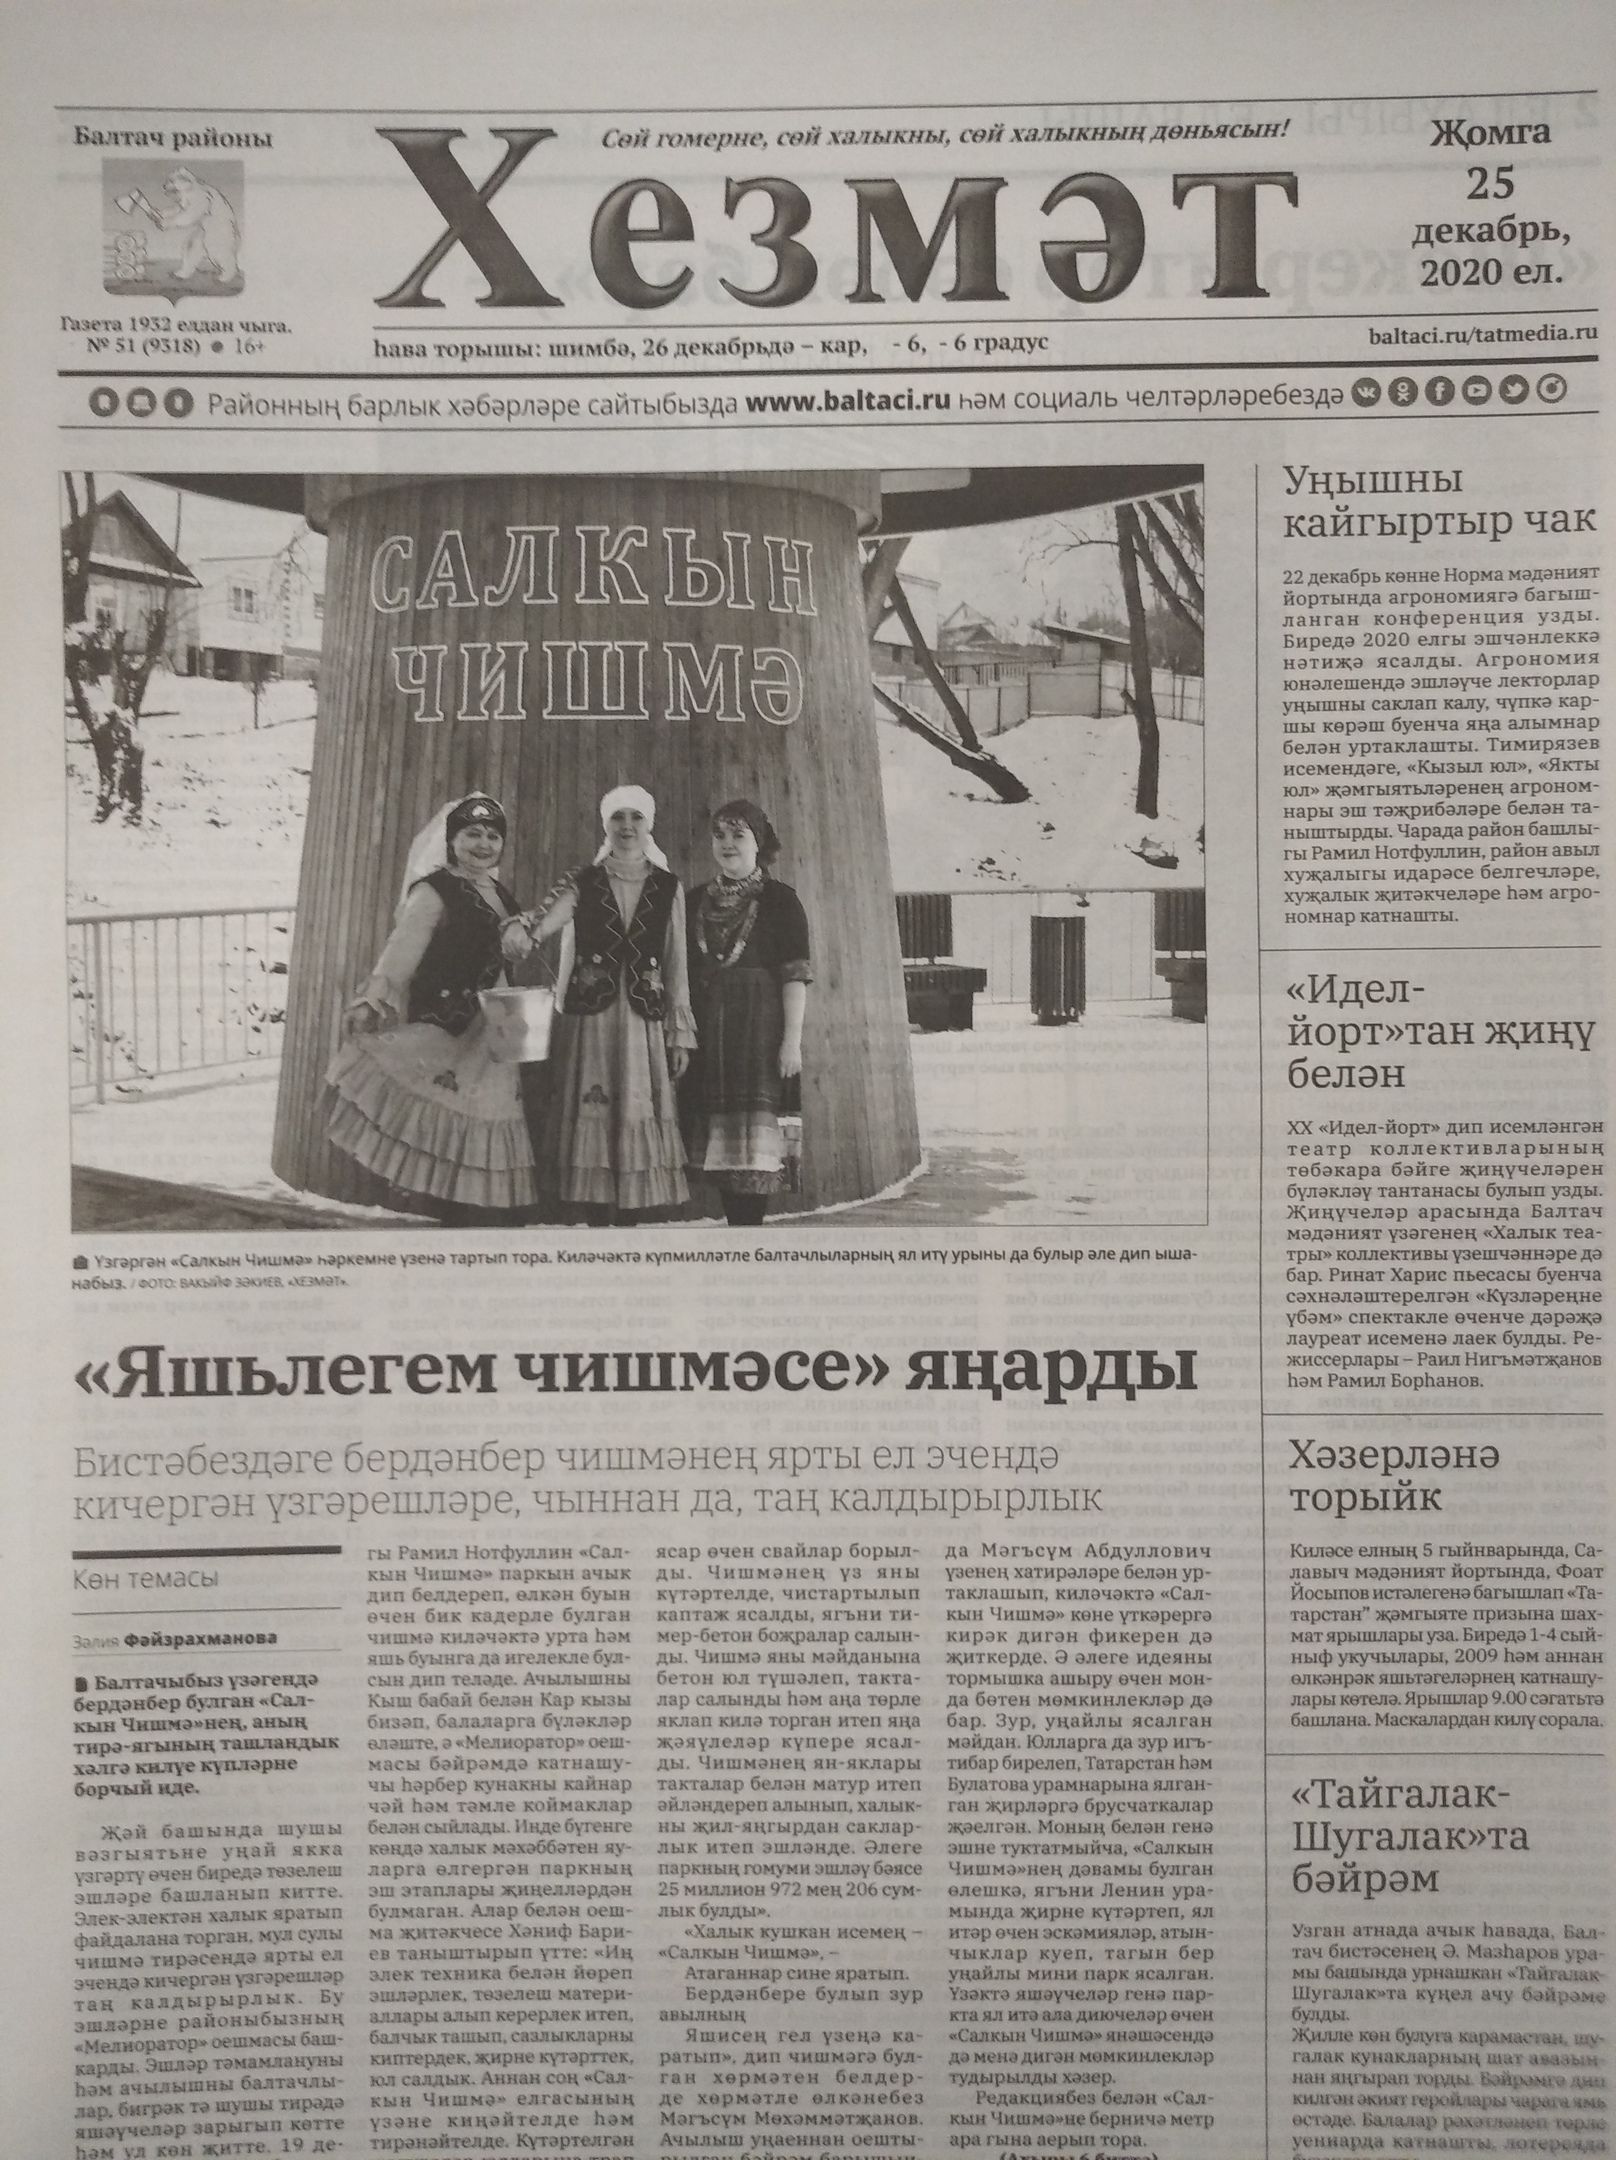 Газетаның 51нче санында (25 декабрь, 2020 ел) чыгарылган белдерүләр һәм рекламалар